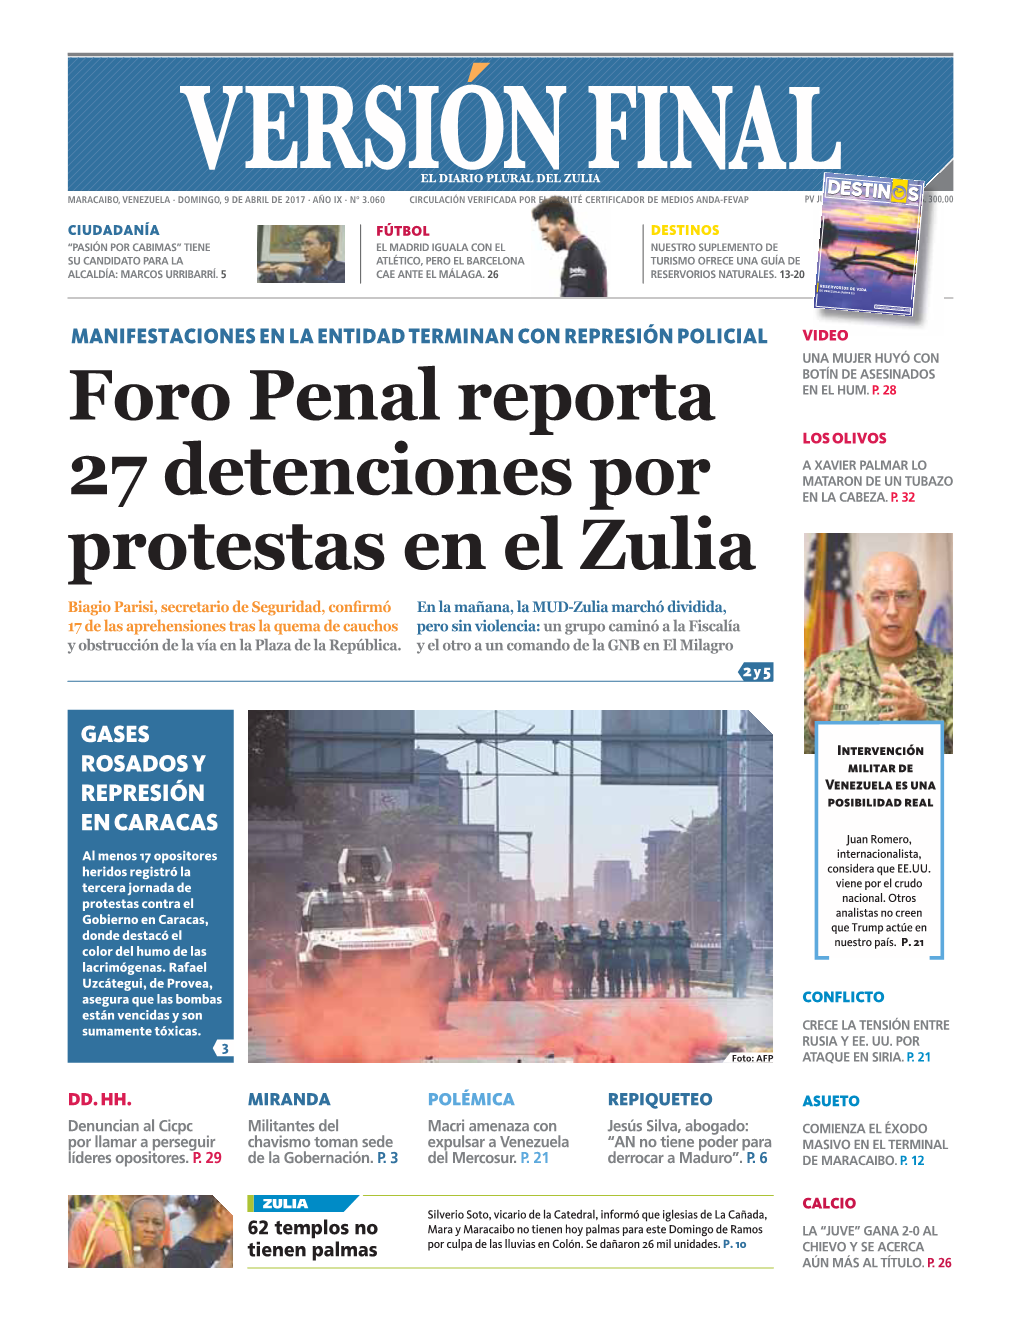 Foro Penal Reporta 27 Detenciones Por Protestas En El Zulia